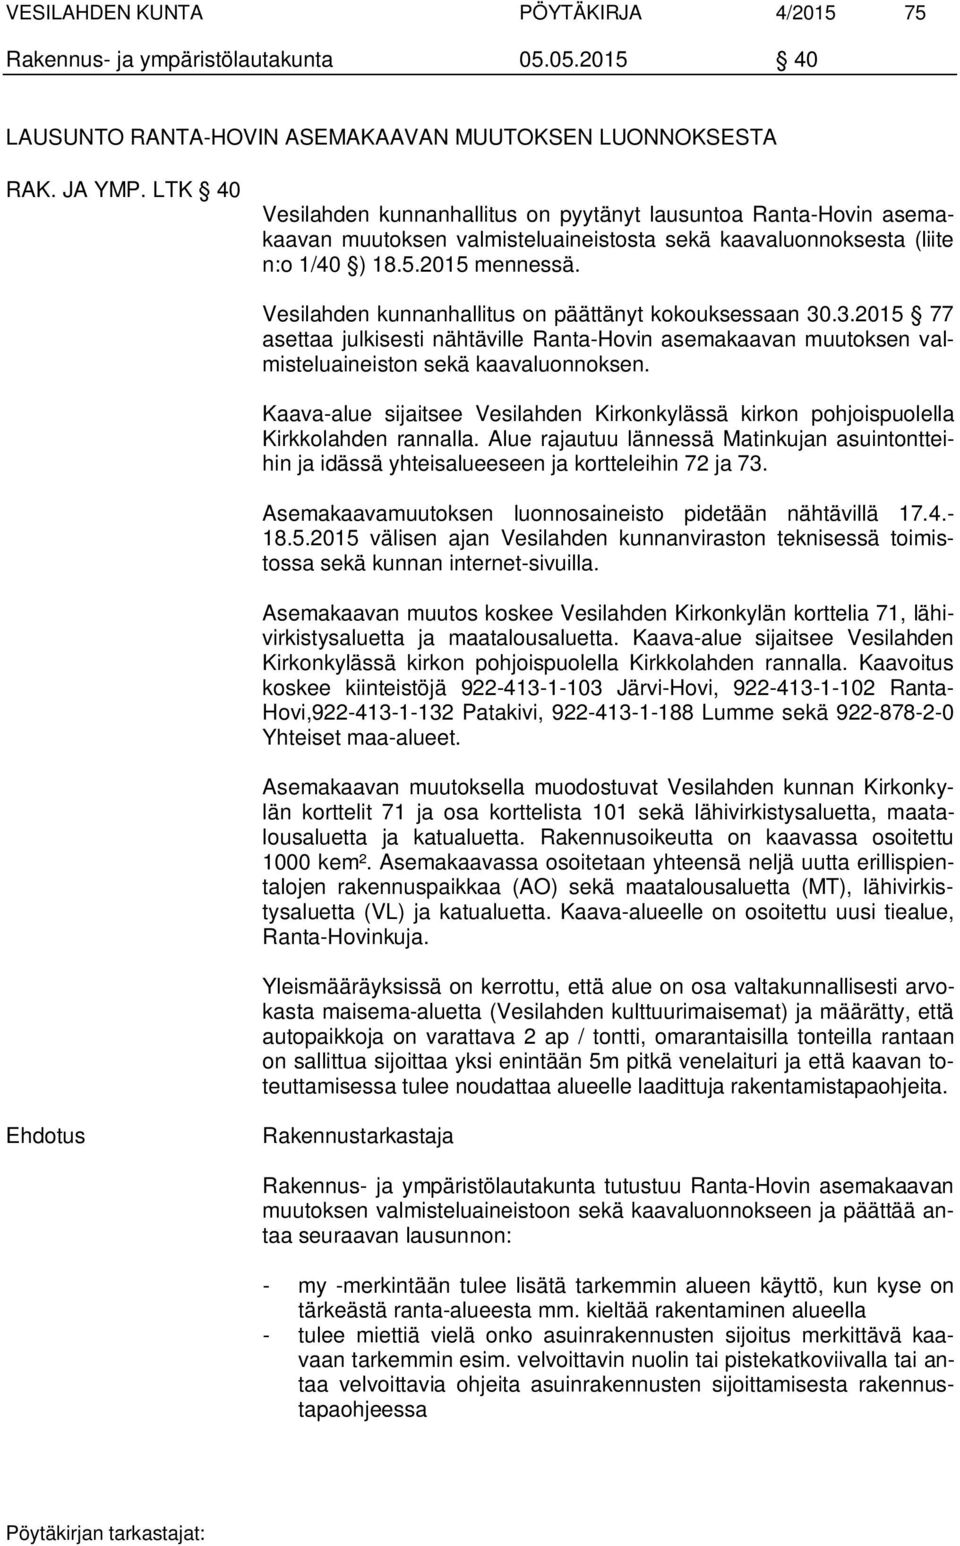 Vesilahden kunnanhallitus on päättänyt kokouksessaan 30.3.2015 77 asettaa julkisesti nähtäville Ranta-Hovin asemakaavan muutoksen valmisteluaineiston sekä kaavaluonnoksen.